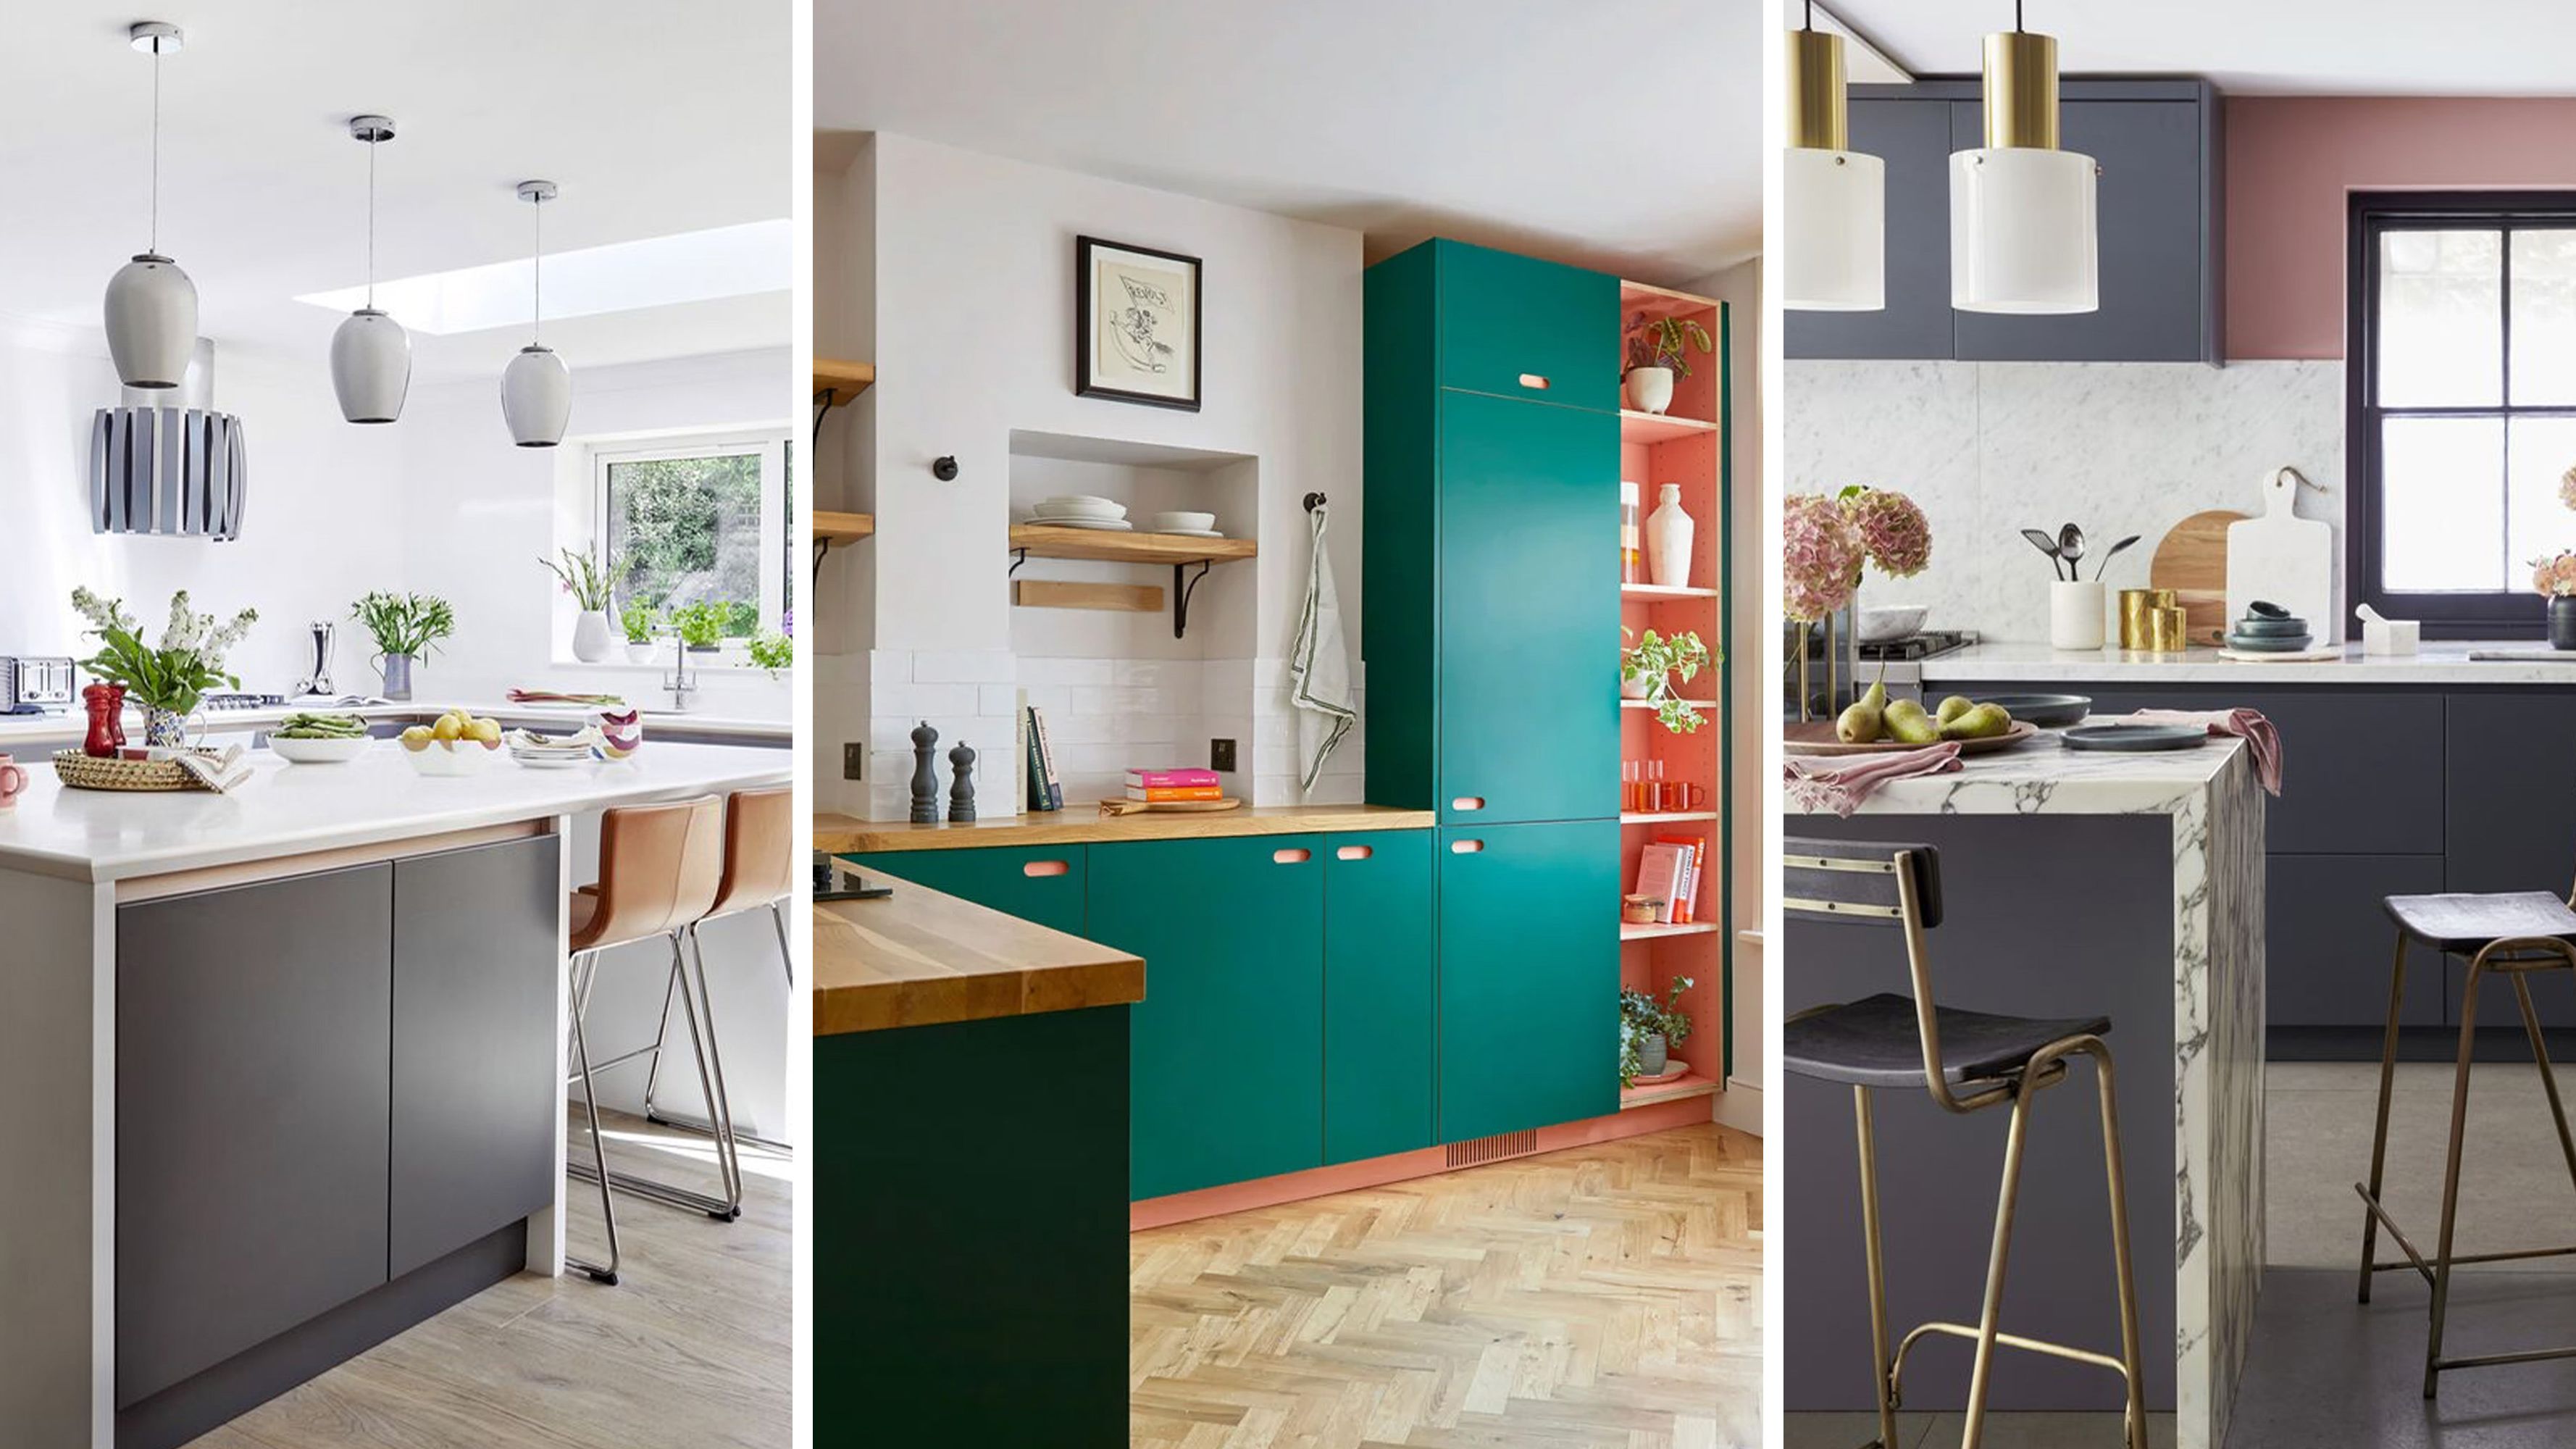 Cocinas sin muebles altos: ¿cómo organizarlas y decorarlas? - Foto 1